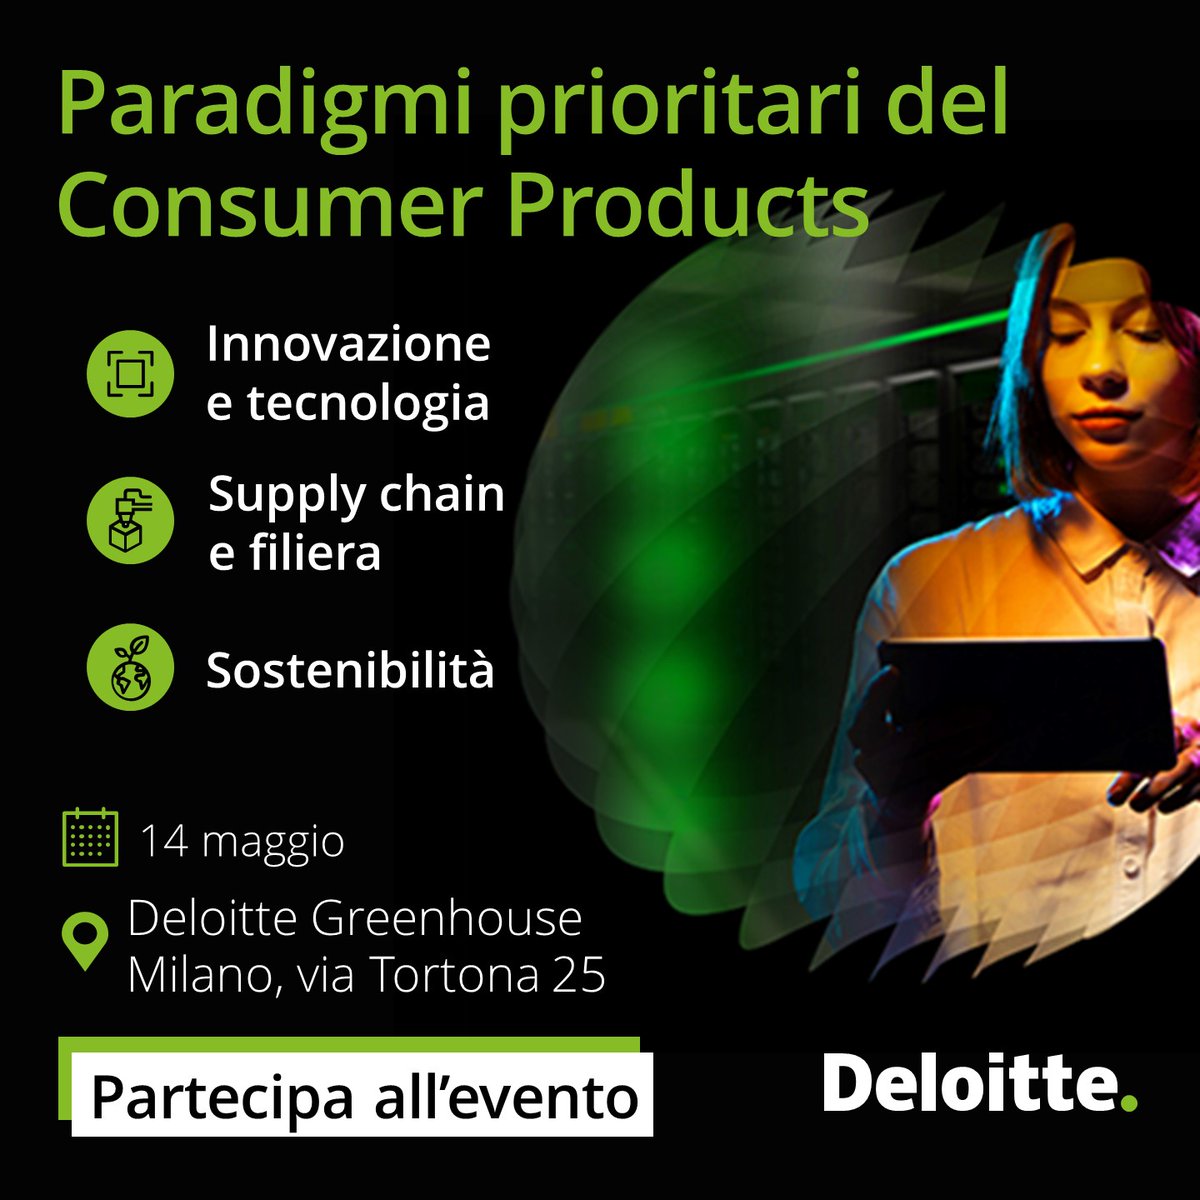 📣 Si avvicina il nuovo evento Deloitte dedicato ai beni di consumo: imprese ed esperti del settore approfondiranno aspettative dei consumatori e strategie di crescita. Iscriviti: deloi.tt/3UvAHZh #DeloitteItalia #ConsumerProducts